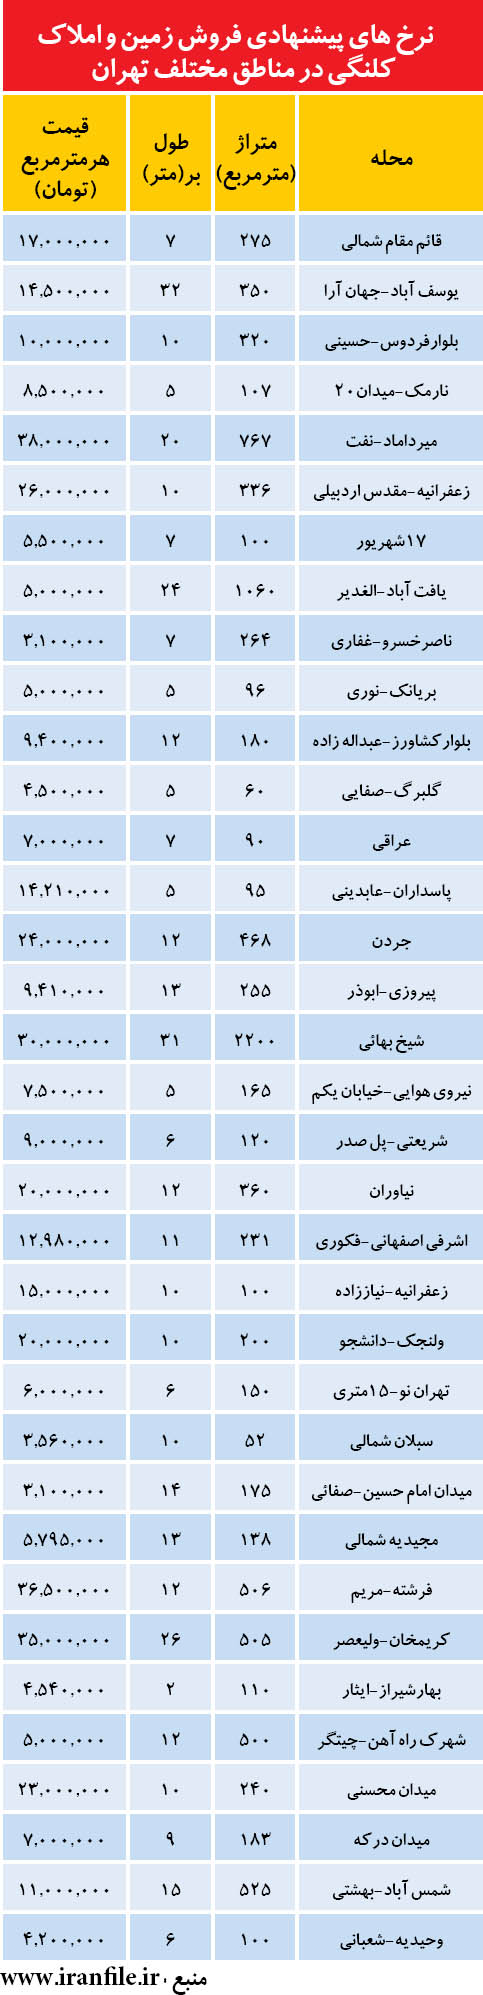 قيمت زمين و ملک كلنگی در تهران+جدول